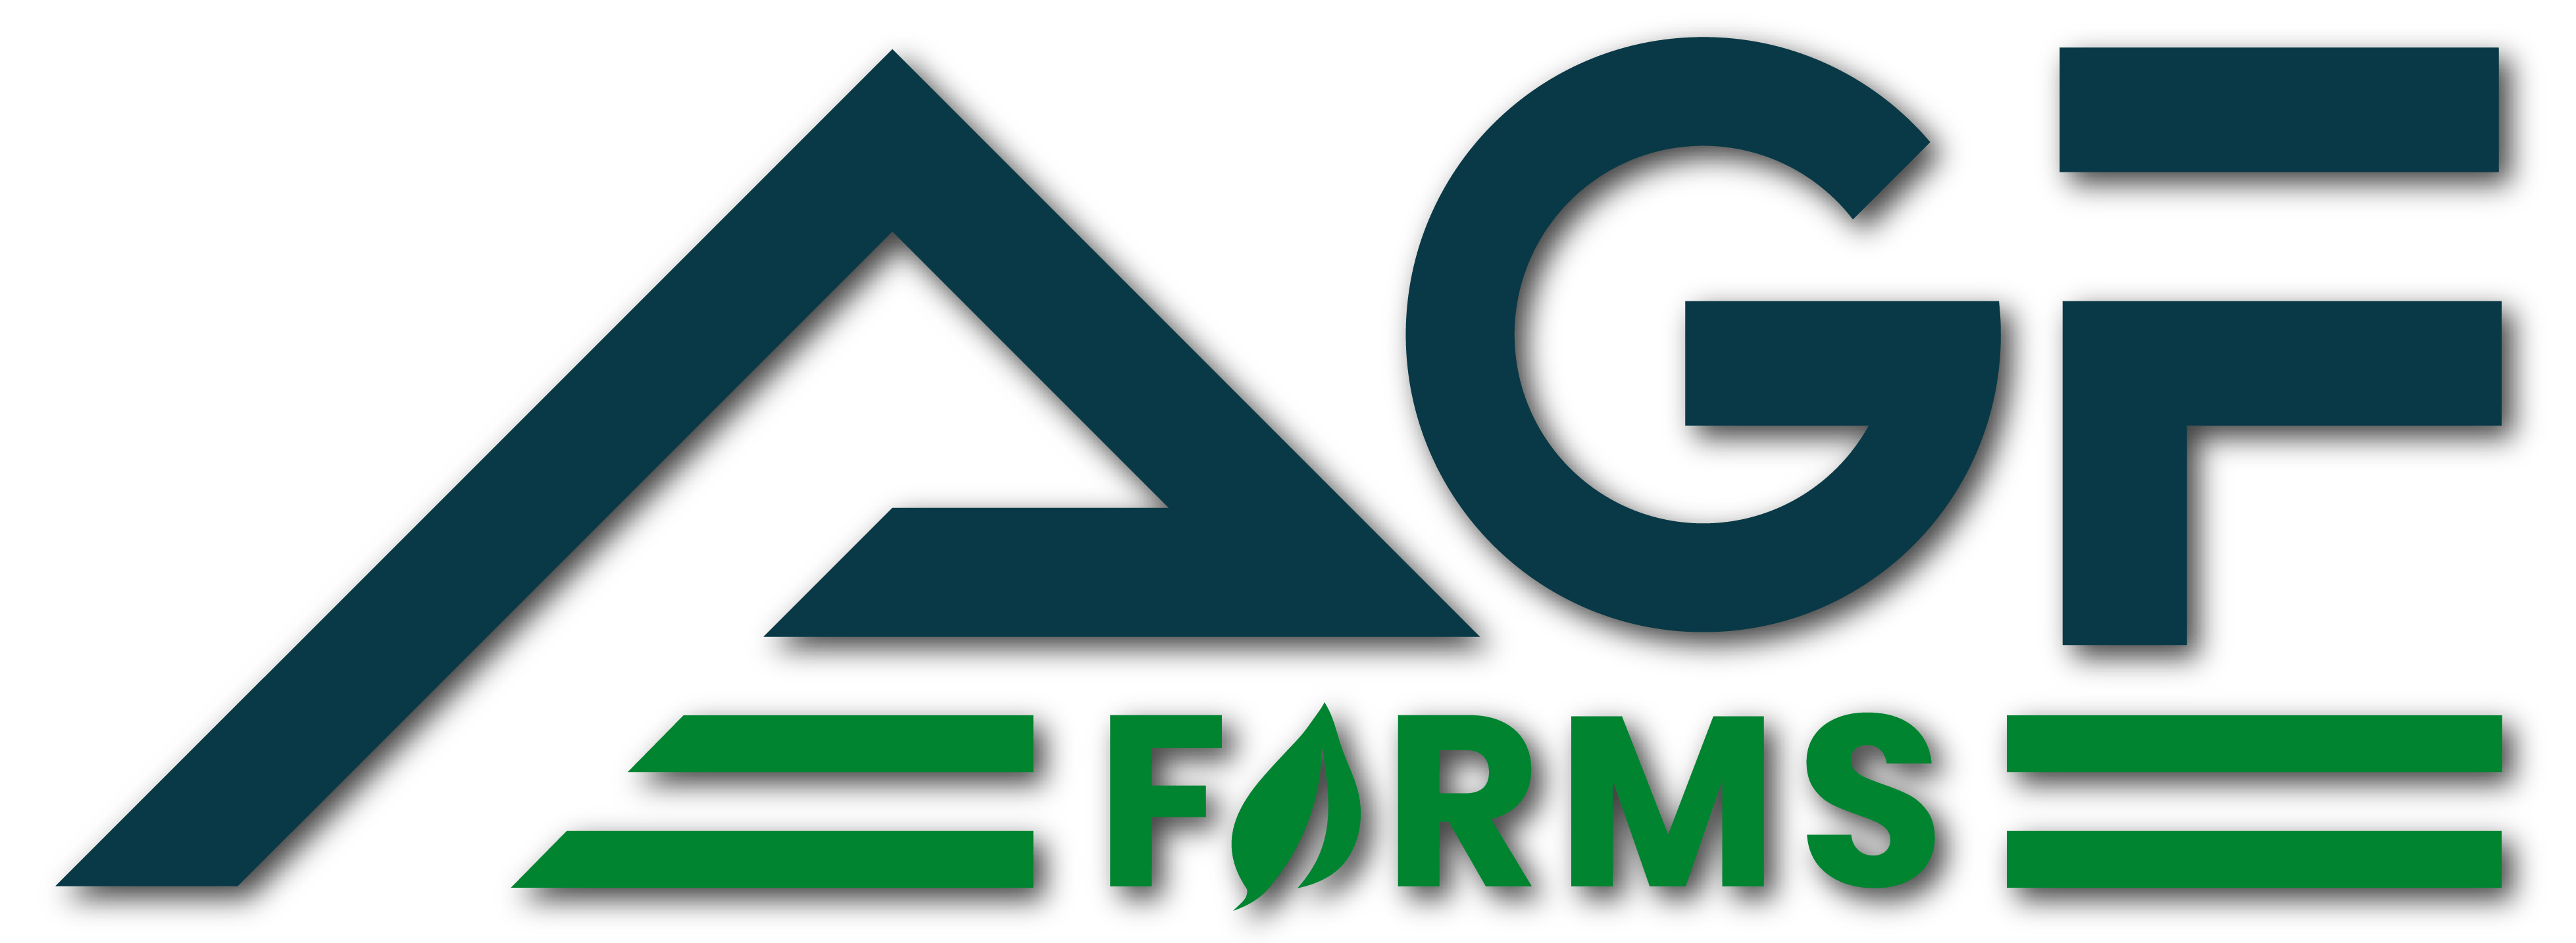 AGF Farms